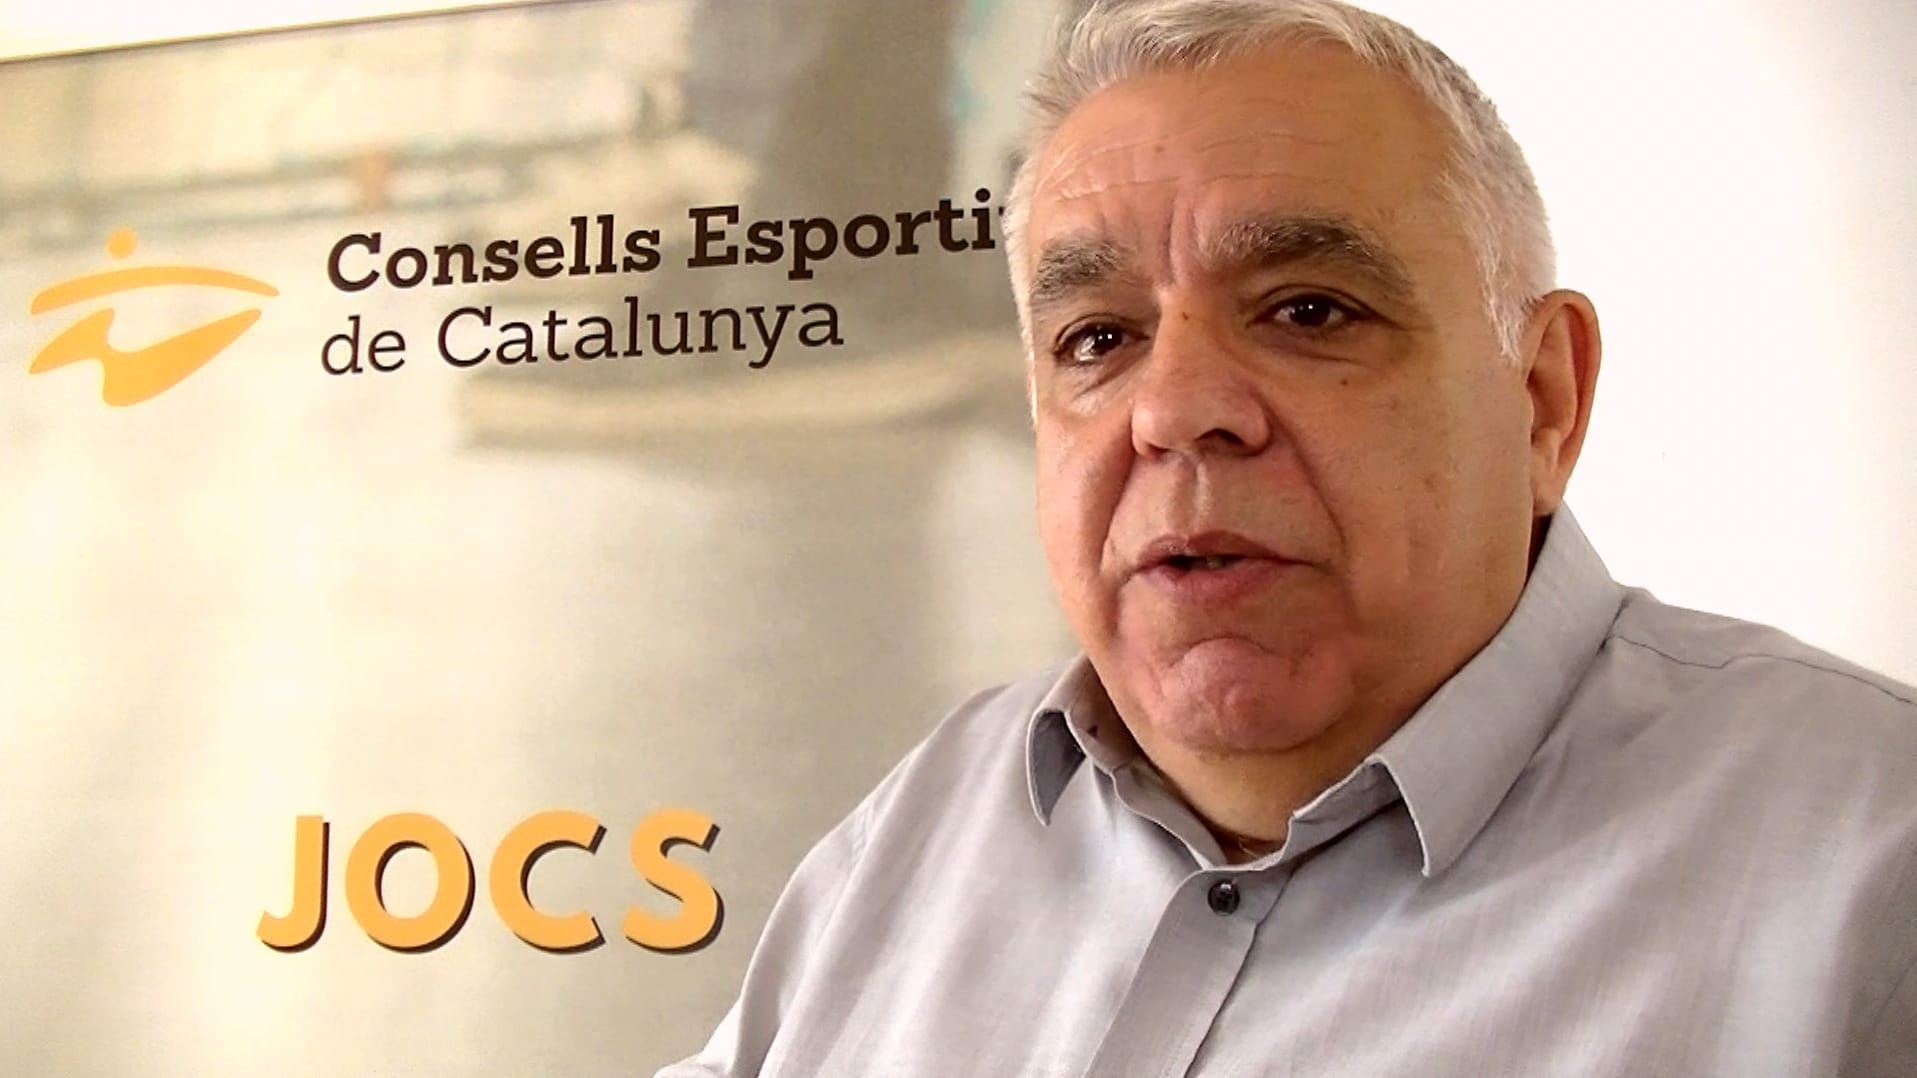 Consells esportius de Catalunya